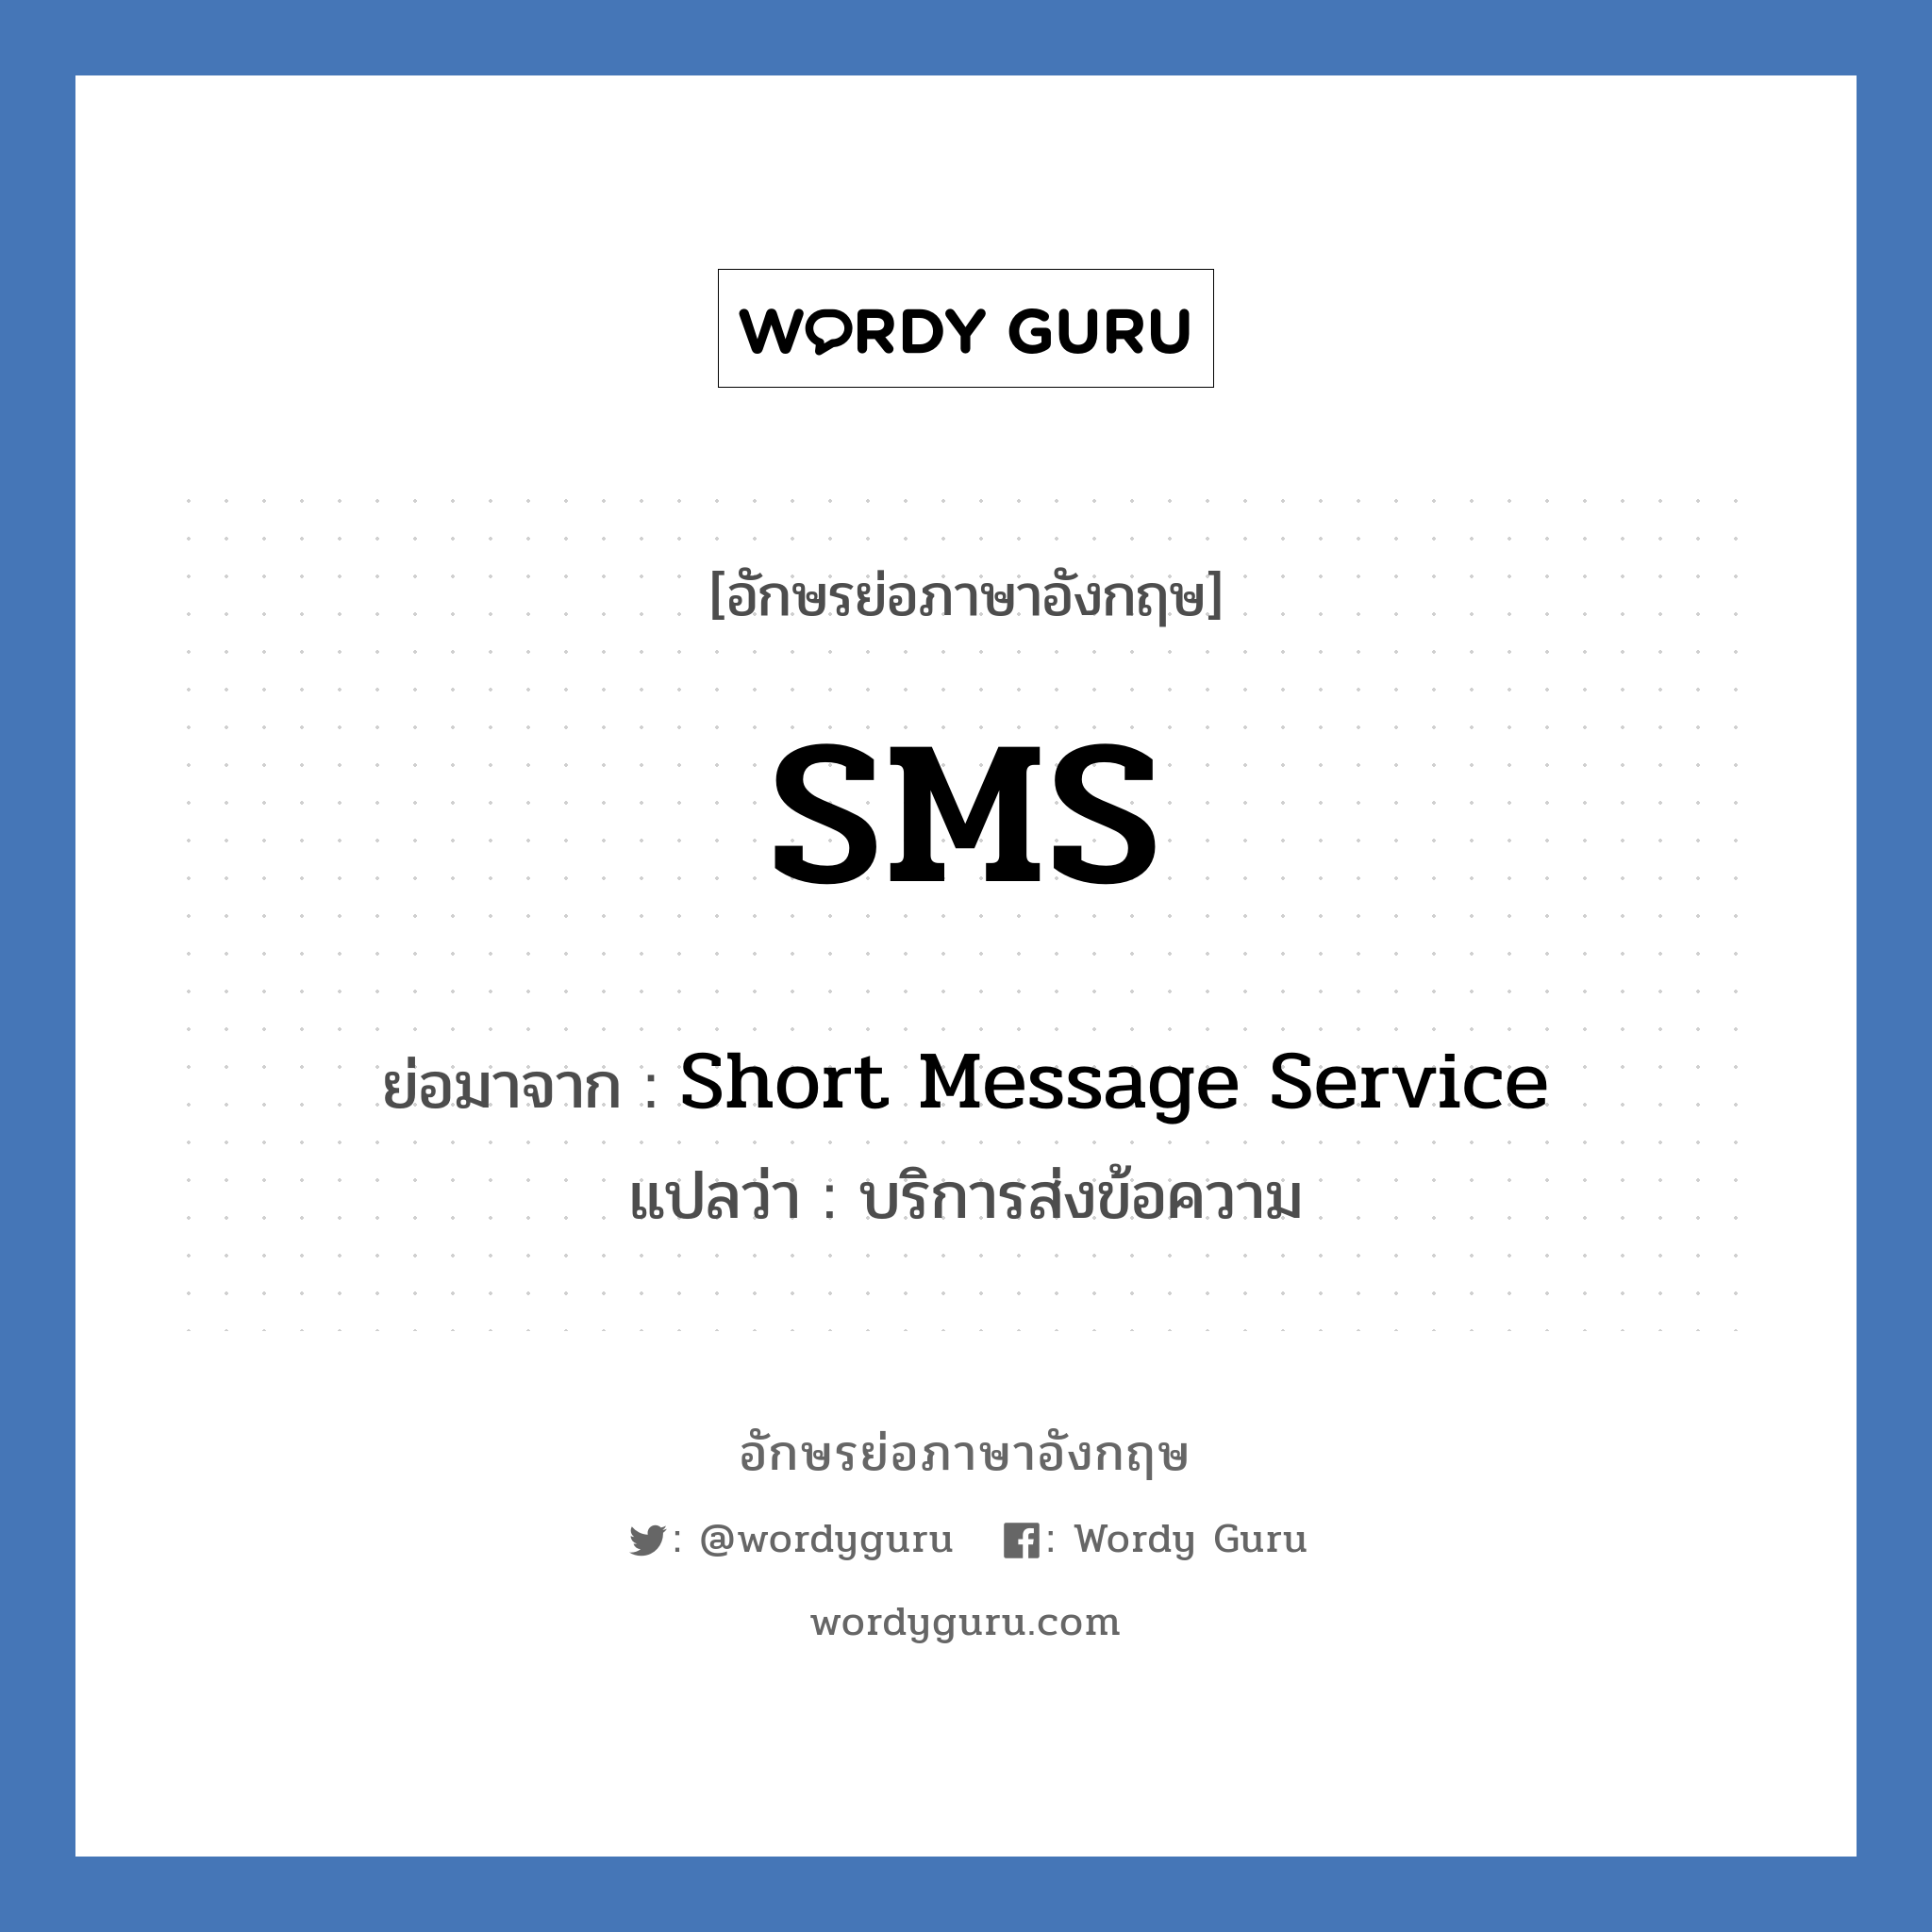 Short Message Service คำย่อคือ? แปลว่า?, อักษรย่อภาษาอังกฤษ Short Message Service ย่อมาจาก SMS แปลว่า บริการส่งข้อความ